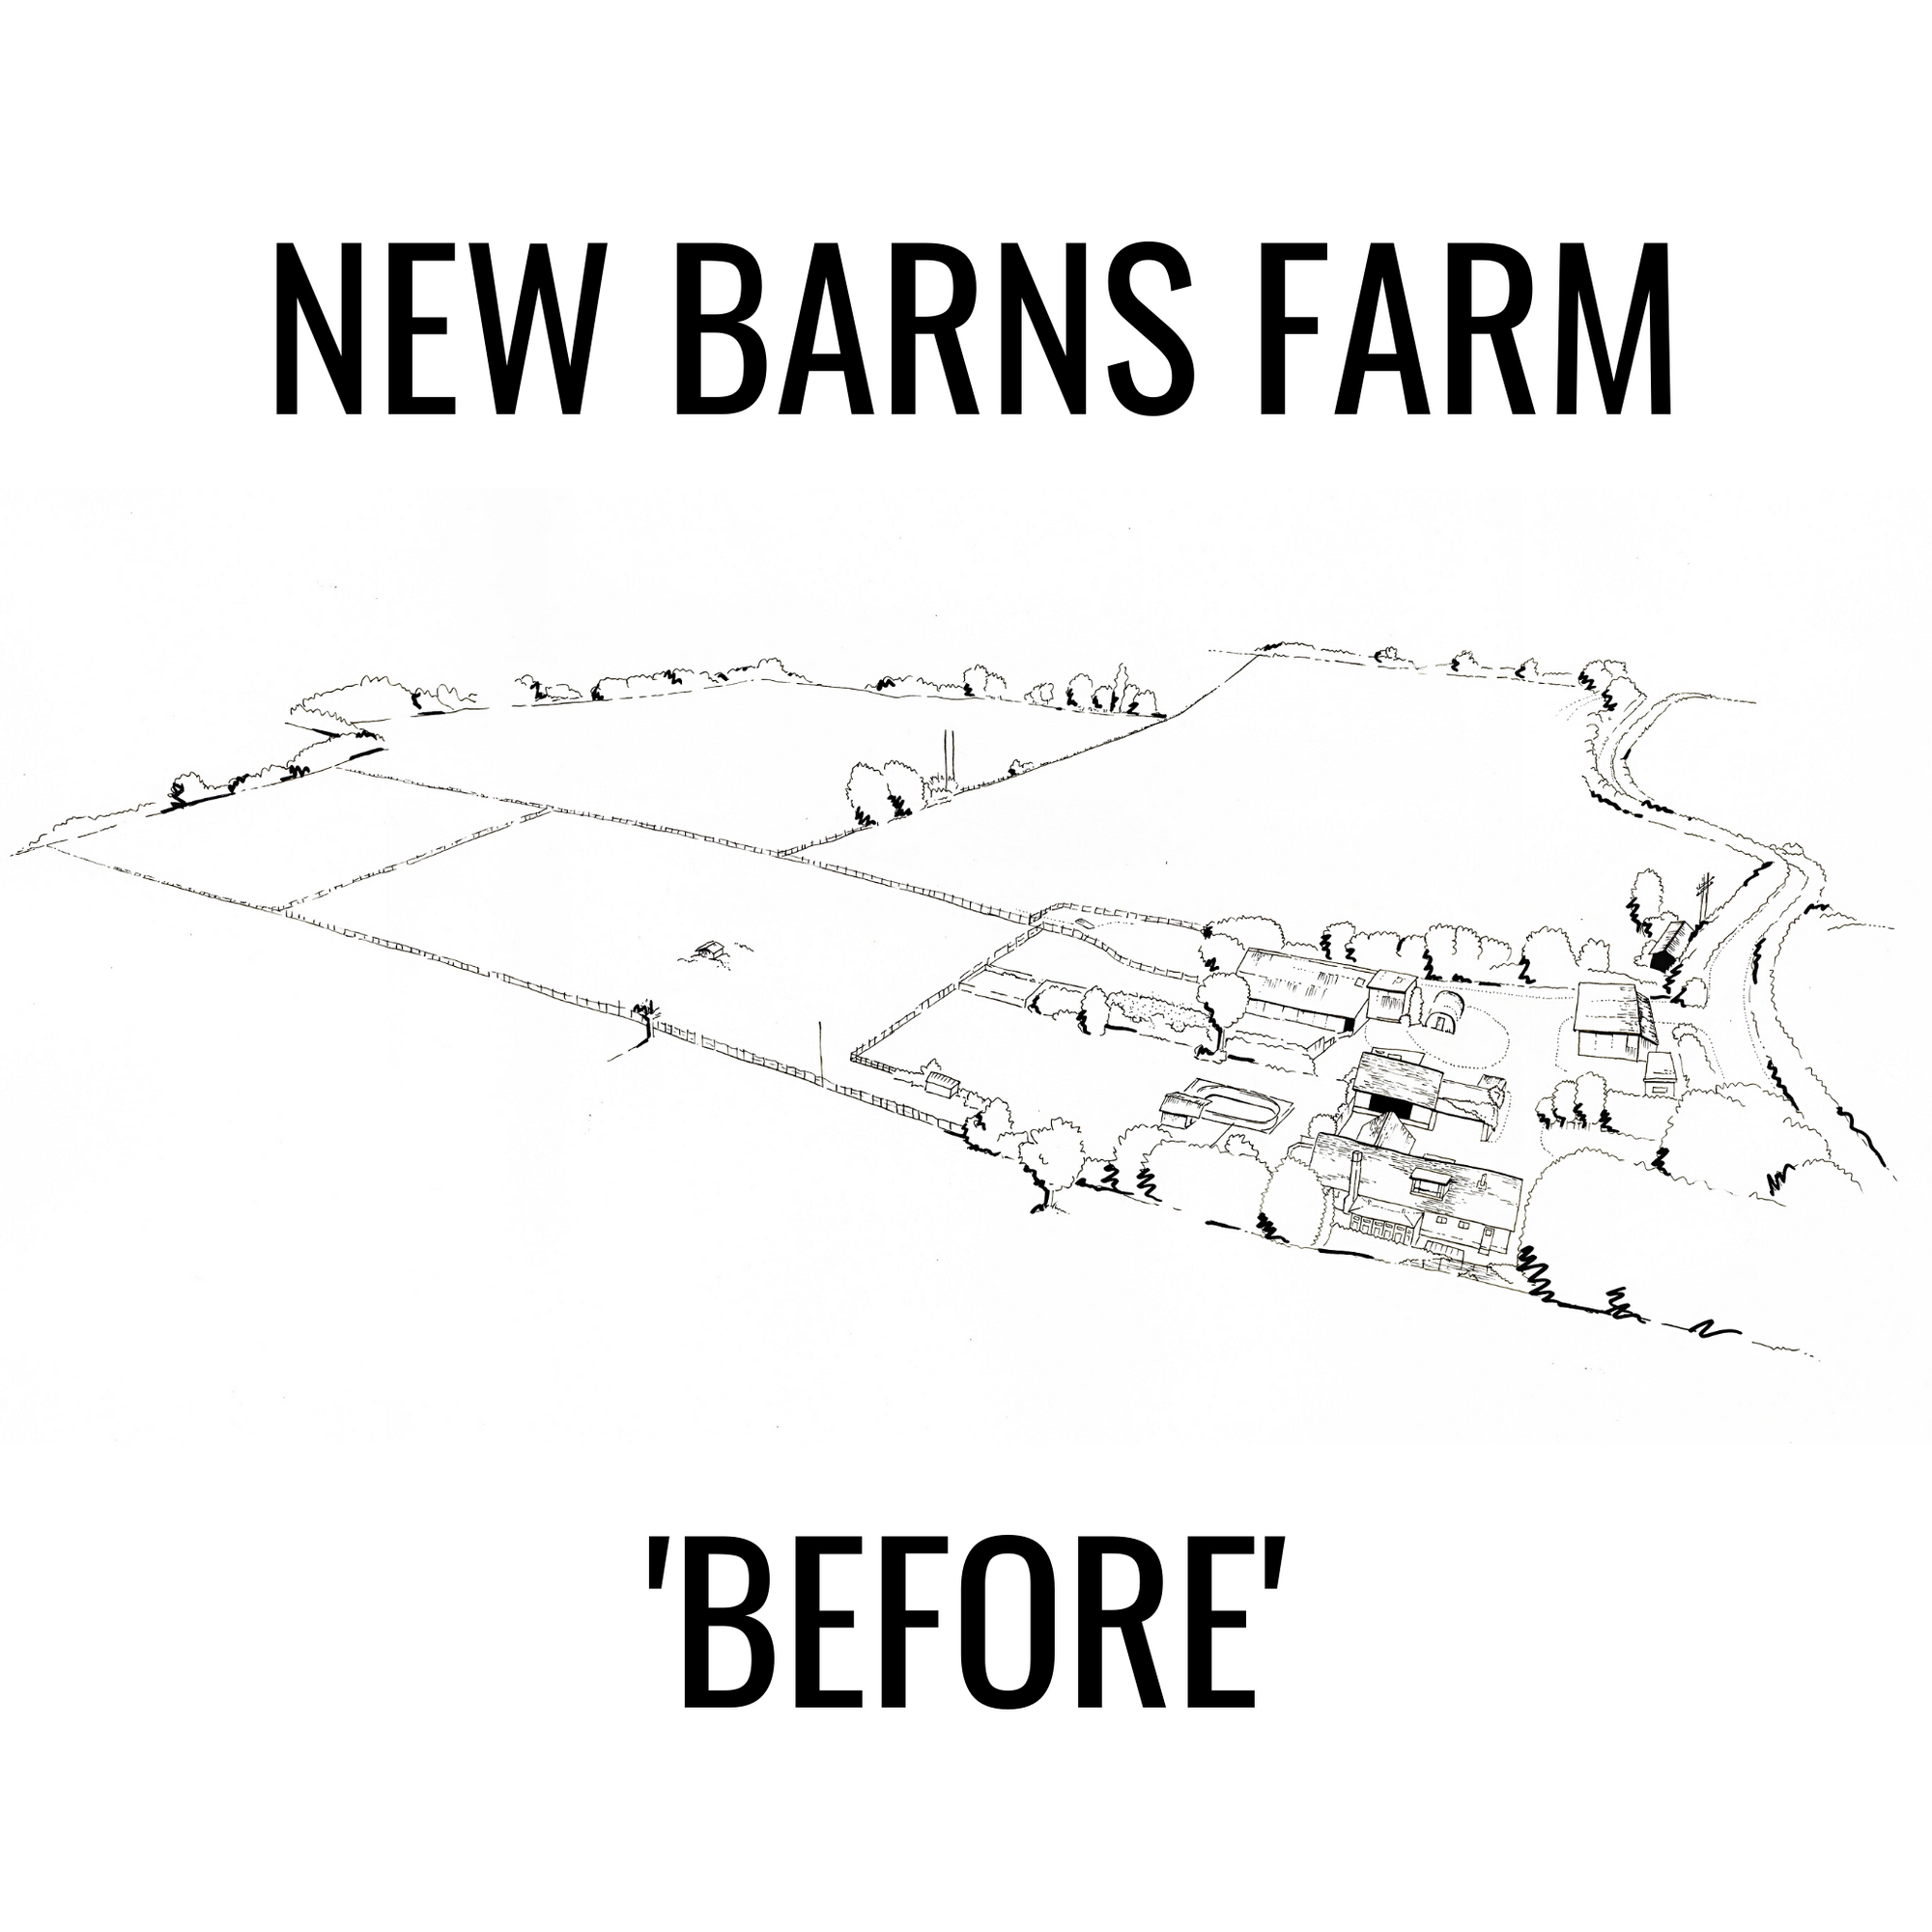 New Barns Farm Illustration 2021 - Elvis & Kresse